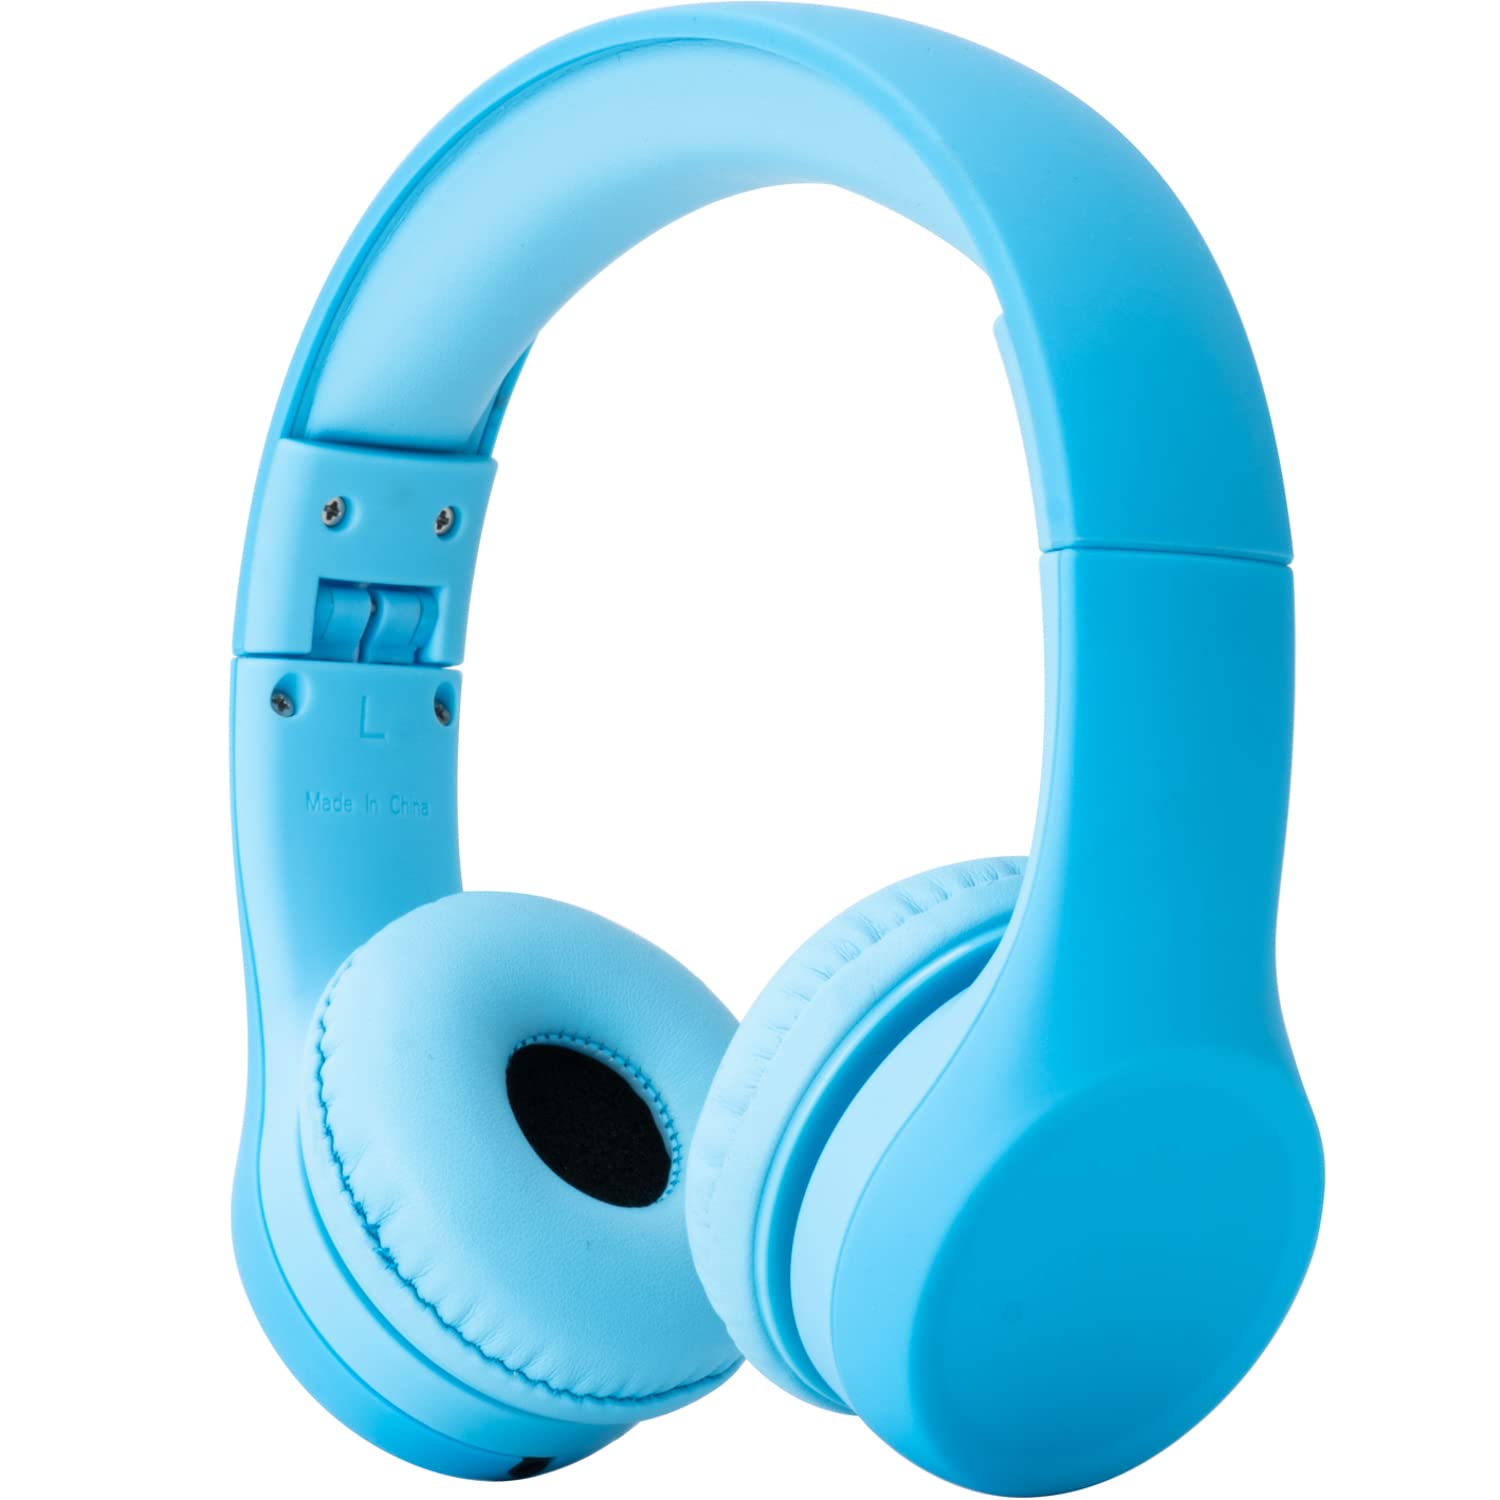 Snug Play+ 아동용 볼륨 제한 헤드폰(남아/여아) - 블루